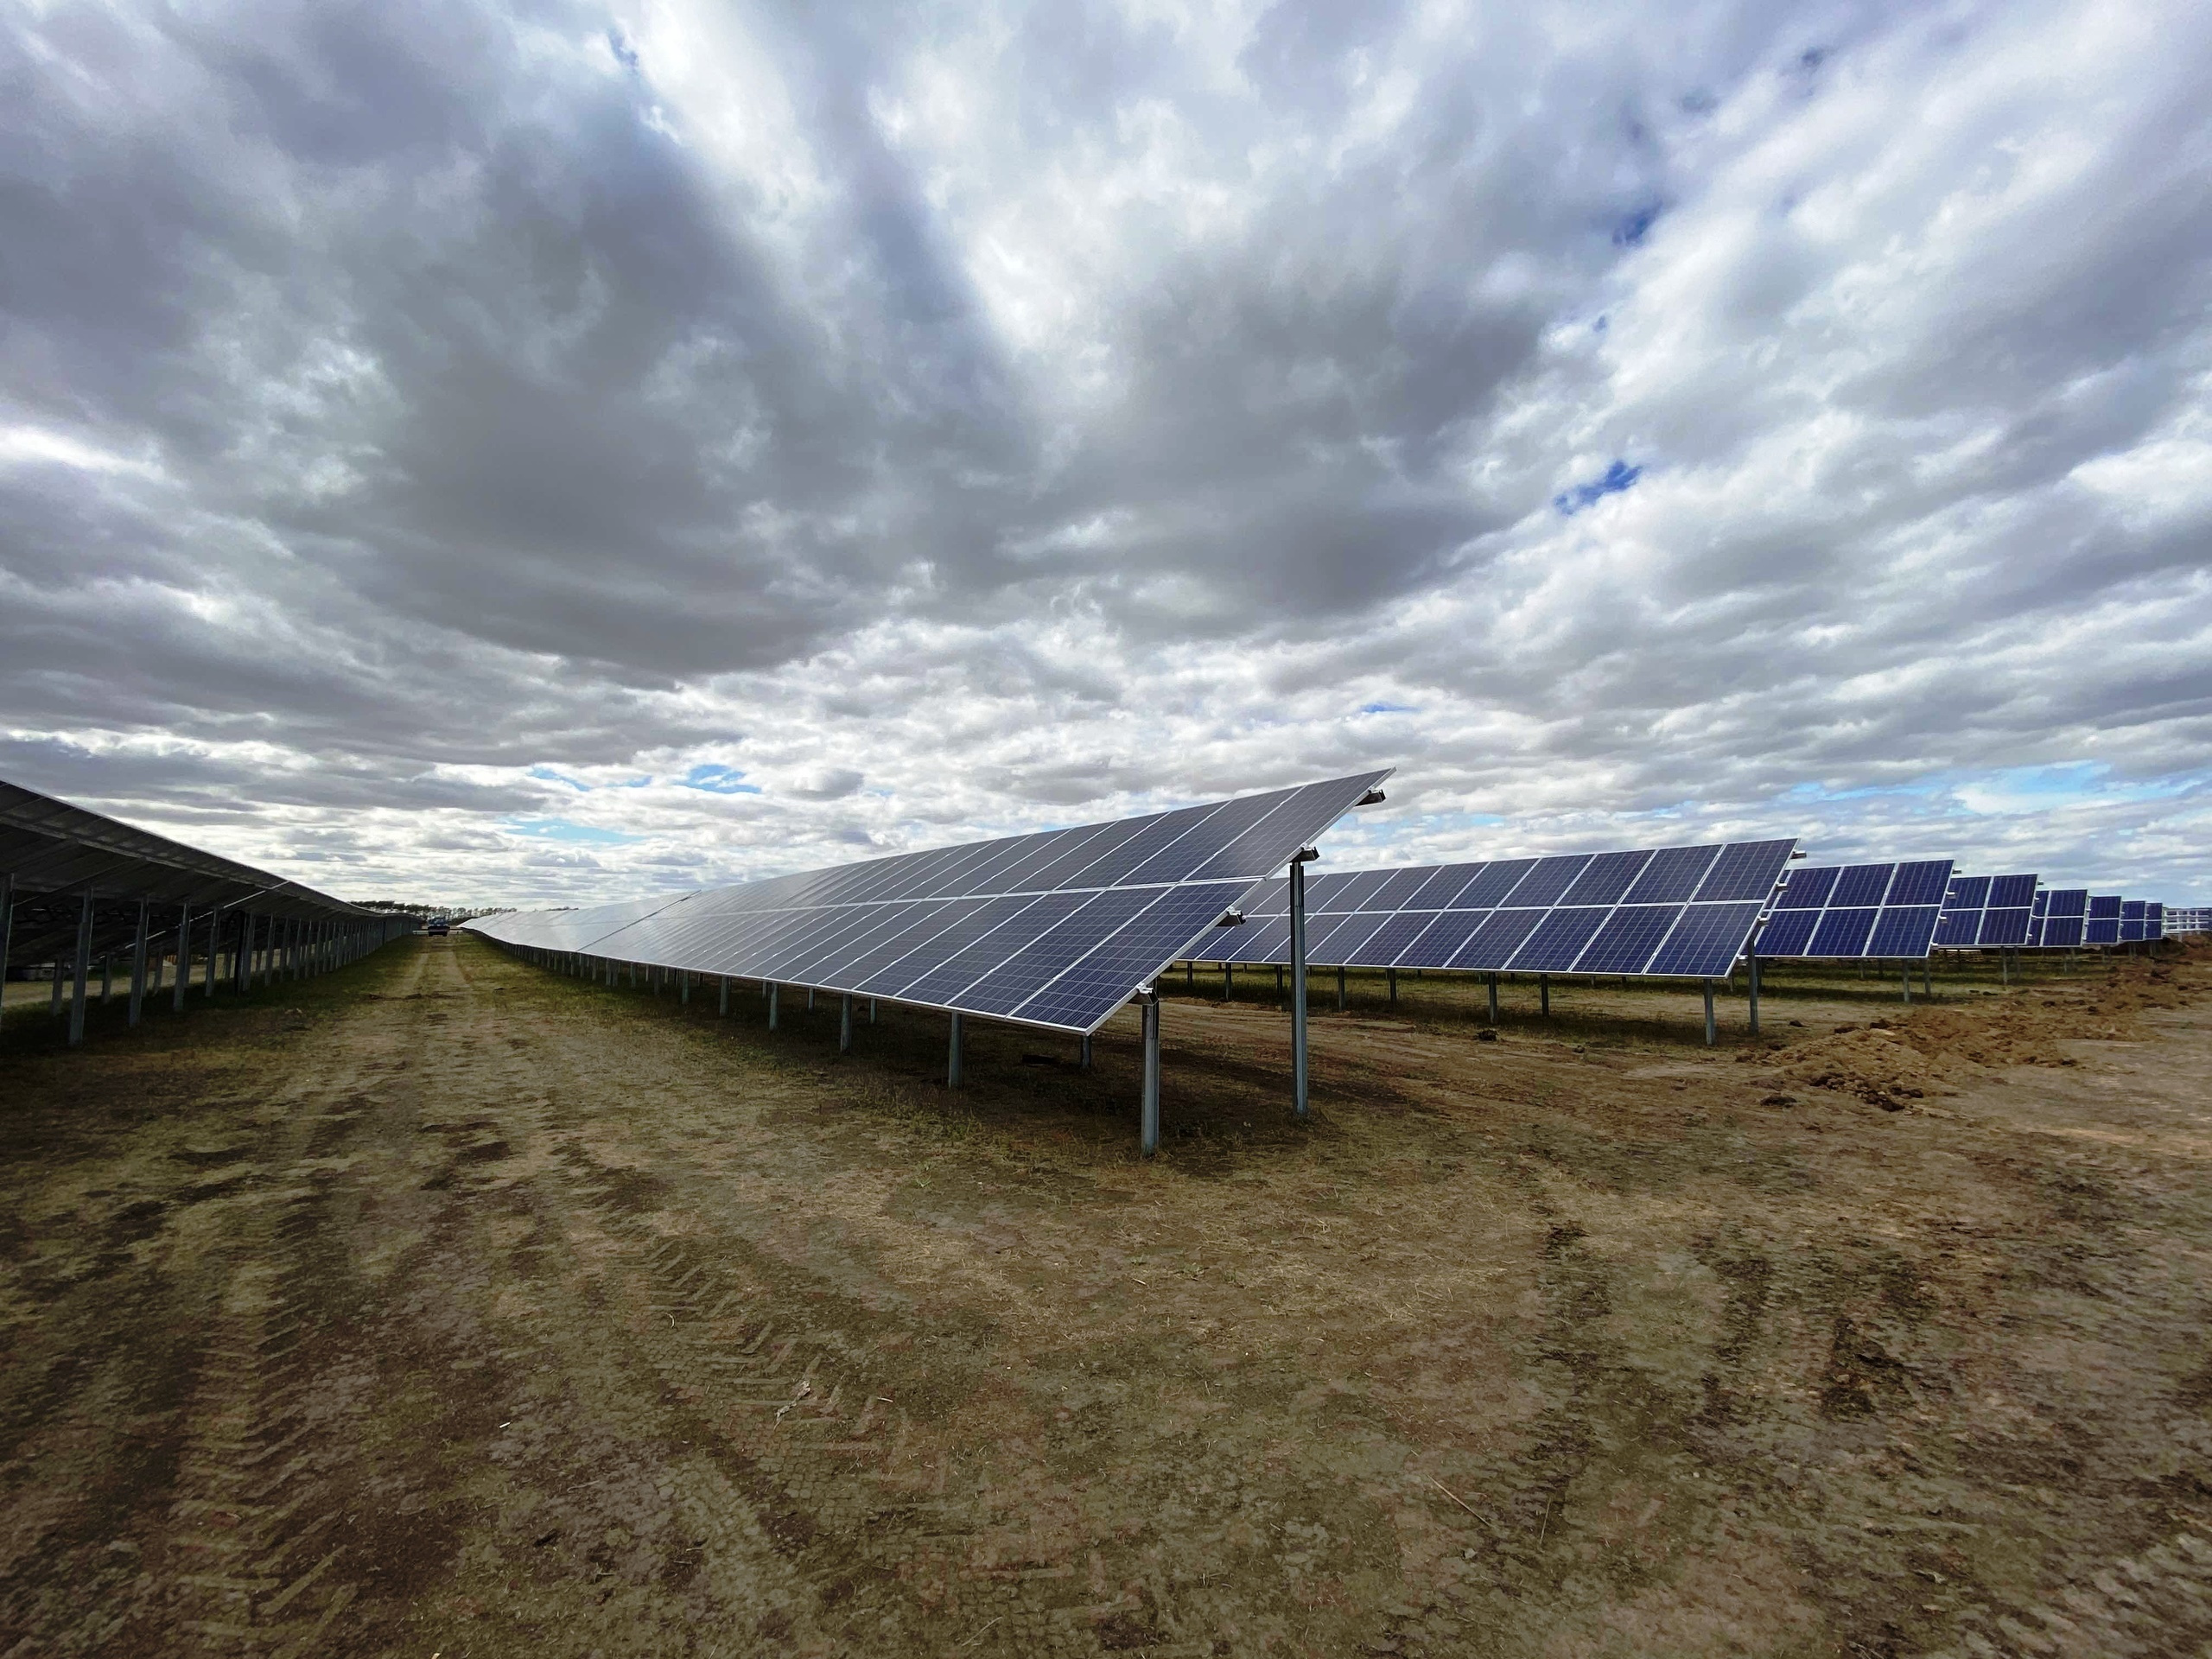 Группа компаний «Хевел», которая построила солнечную электростанцию в Нововаршавском районе, также рассматривала возможность войти на территорию зоны, чтобы производить инверторное оборудование